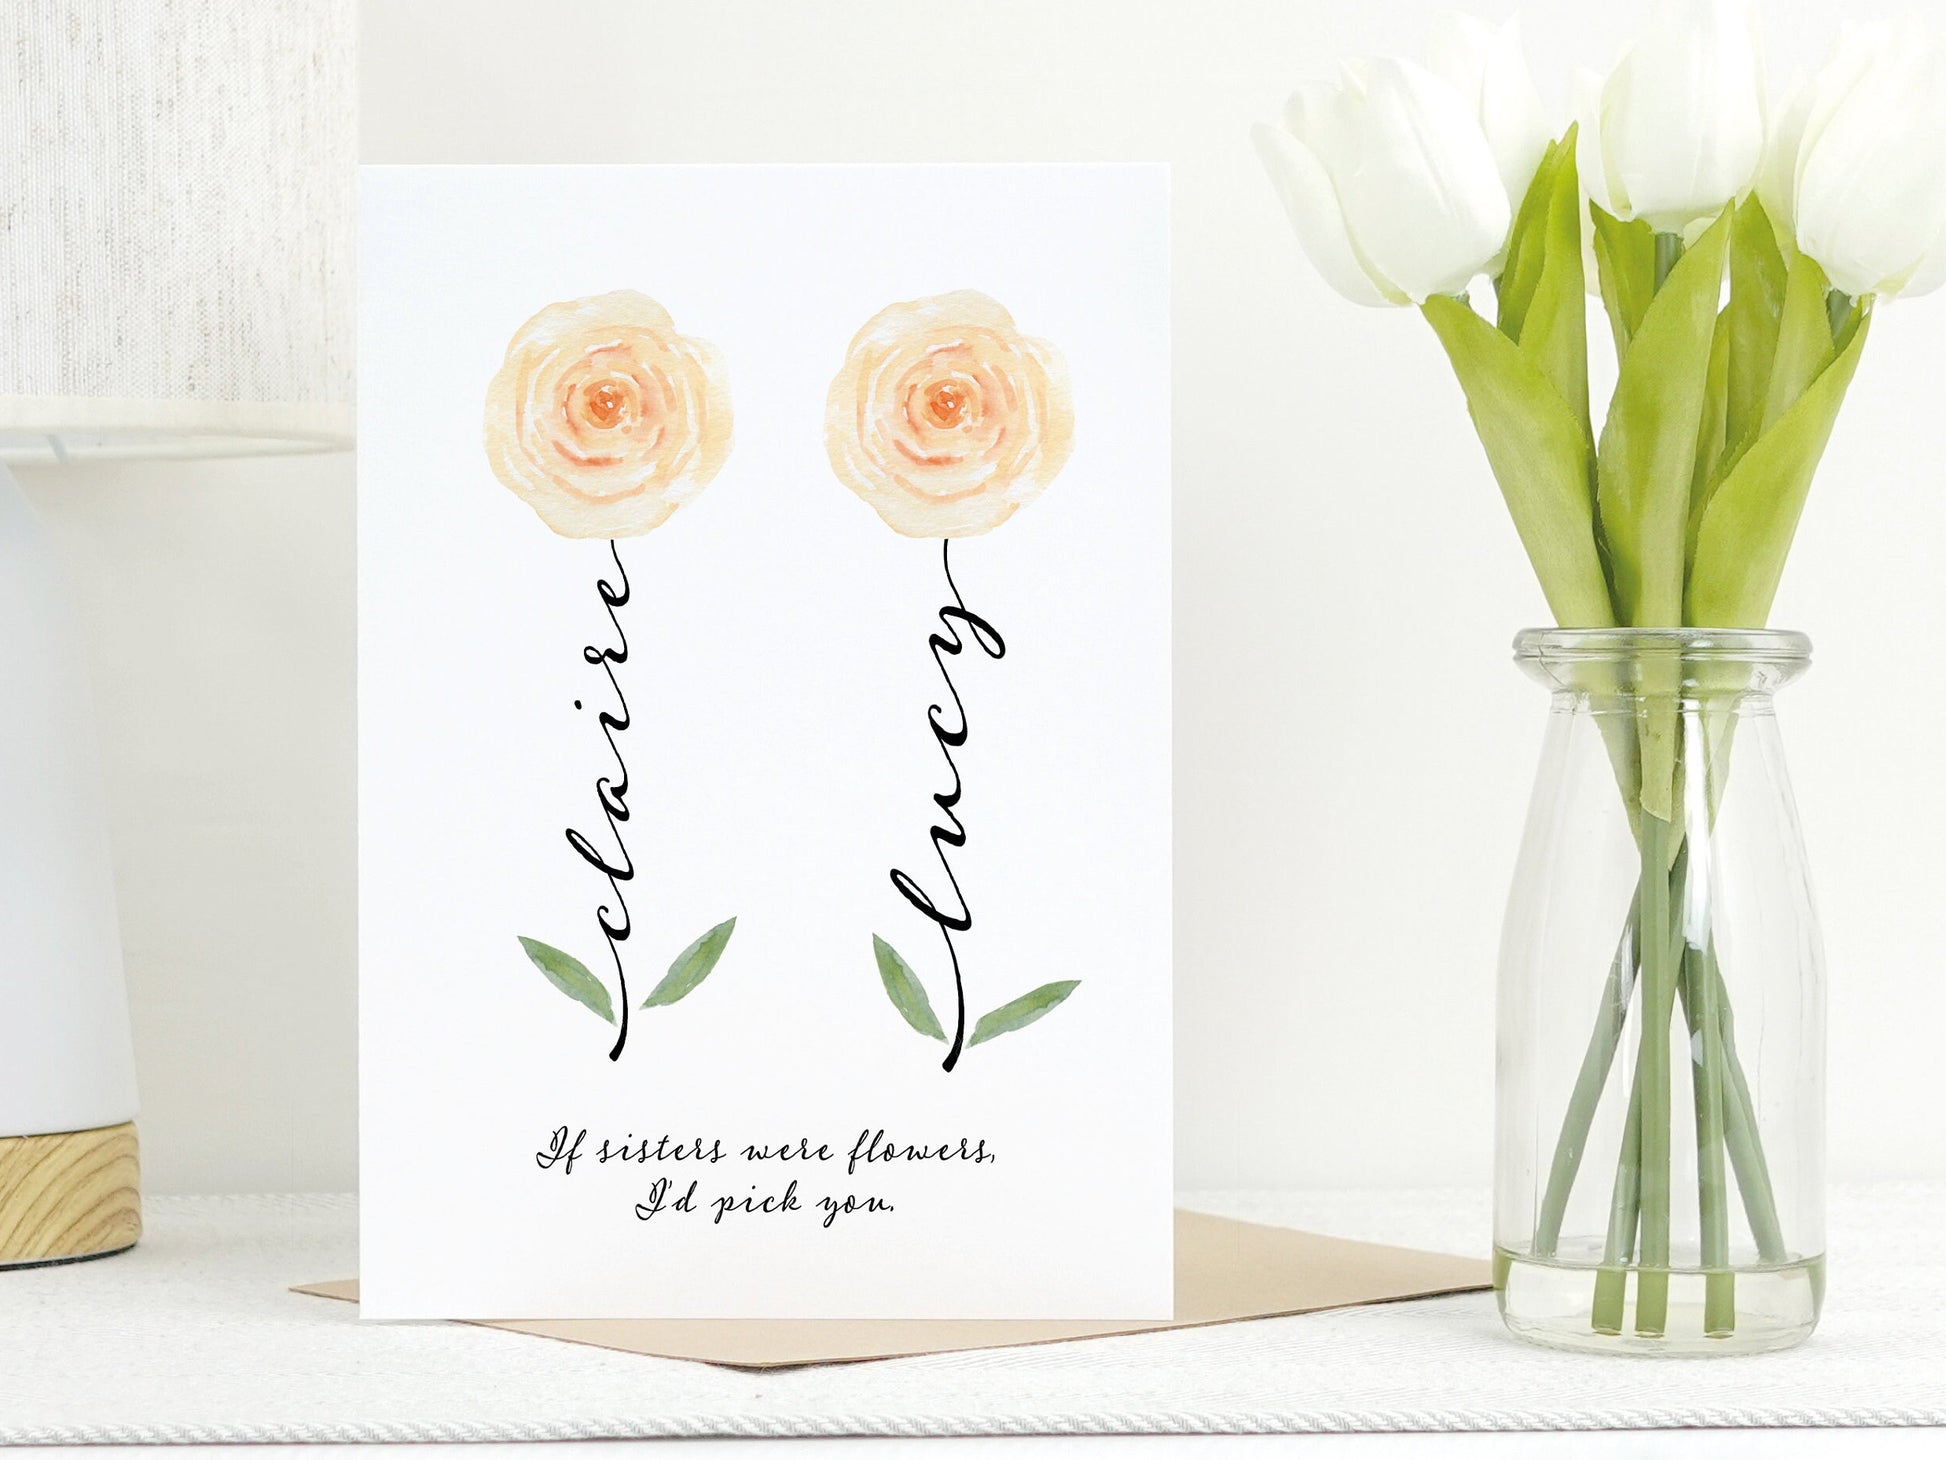 Sister Card | Sister Flower Card | Custom Birthday Card For Sister | Personalised Card For Sister | CHOICE OF 22 FLOWERS VA013